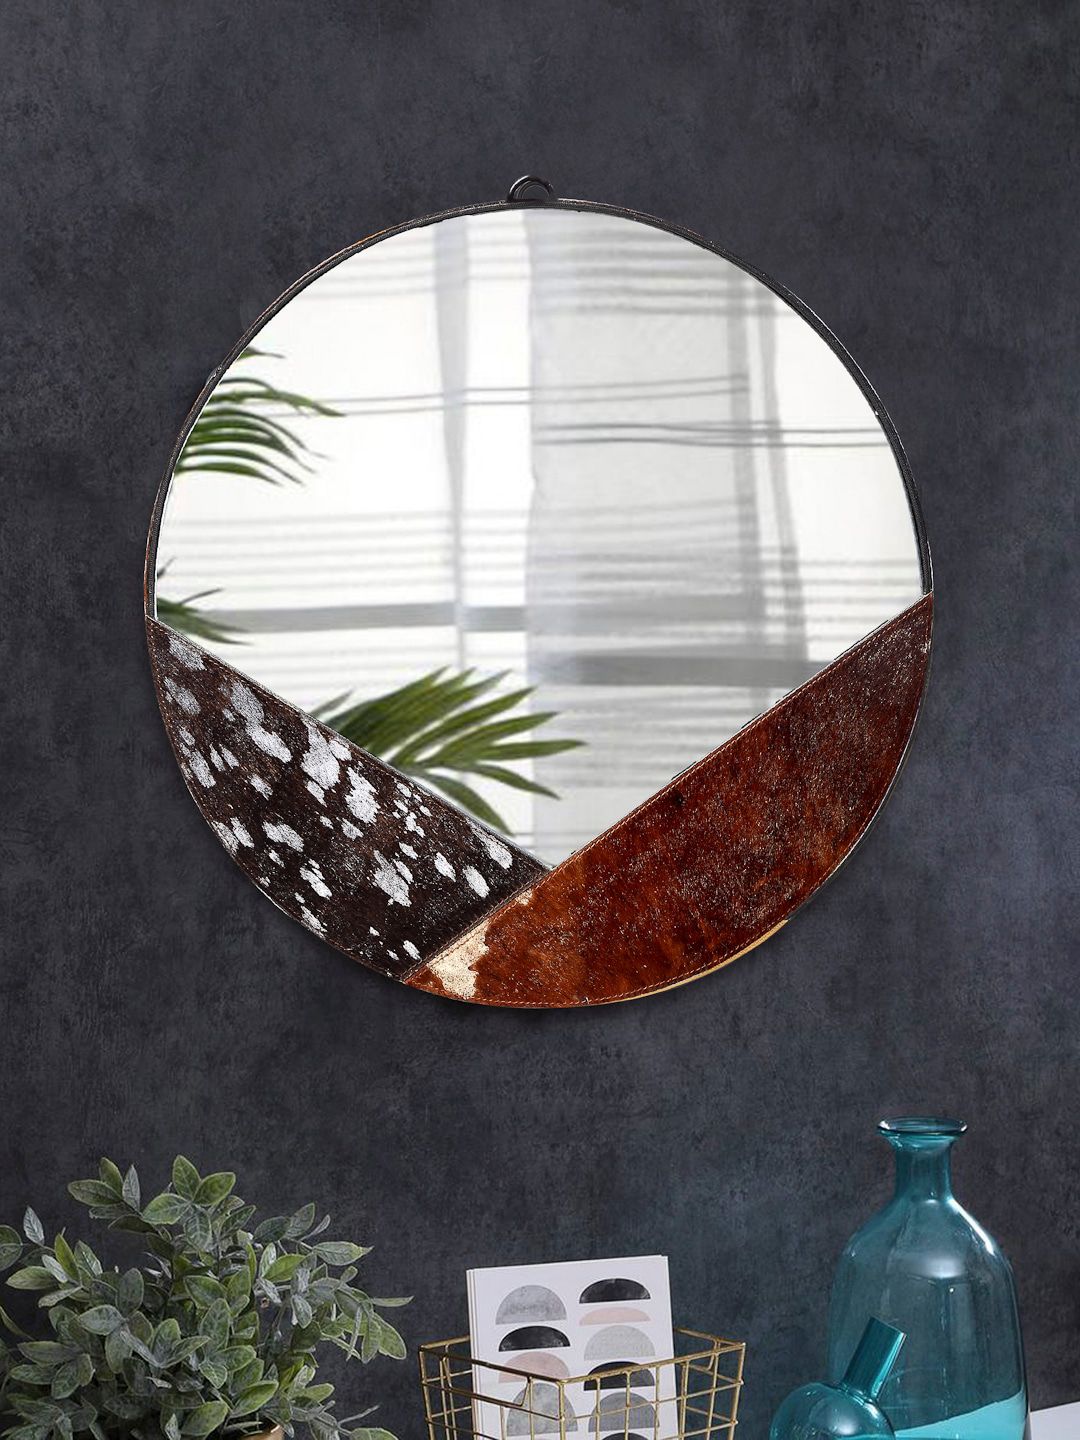 IMUR Brown Circular Wall Glass Mirror Price in India